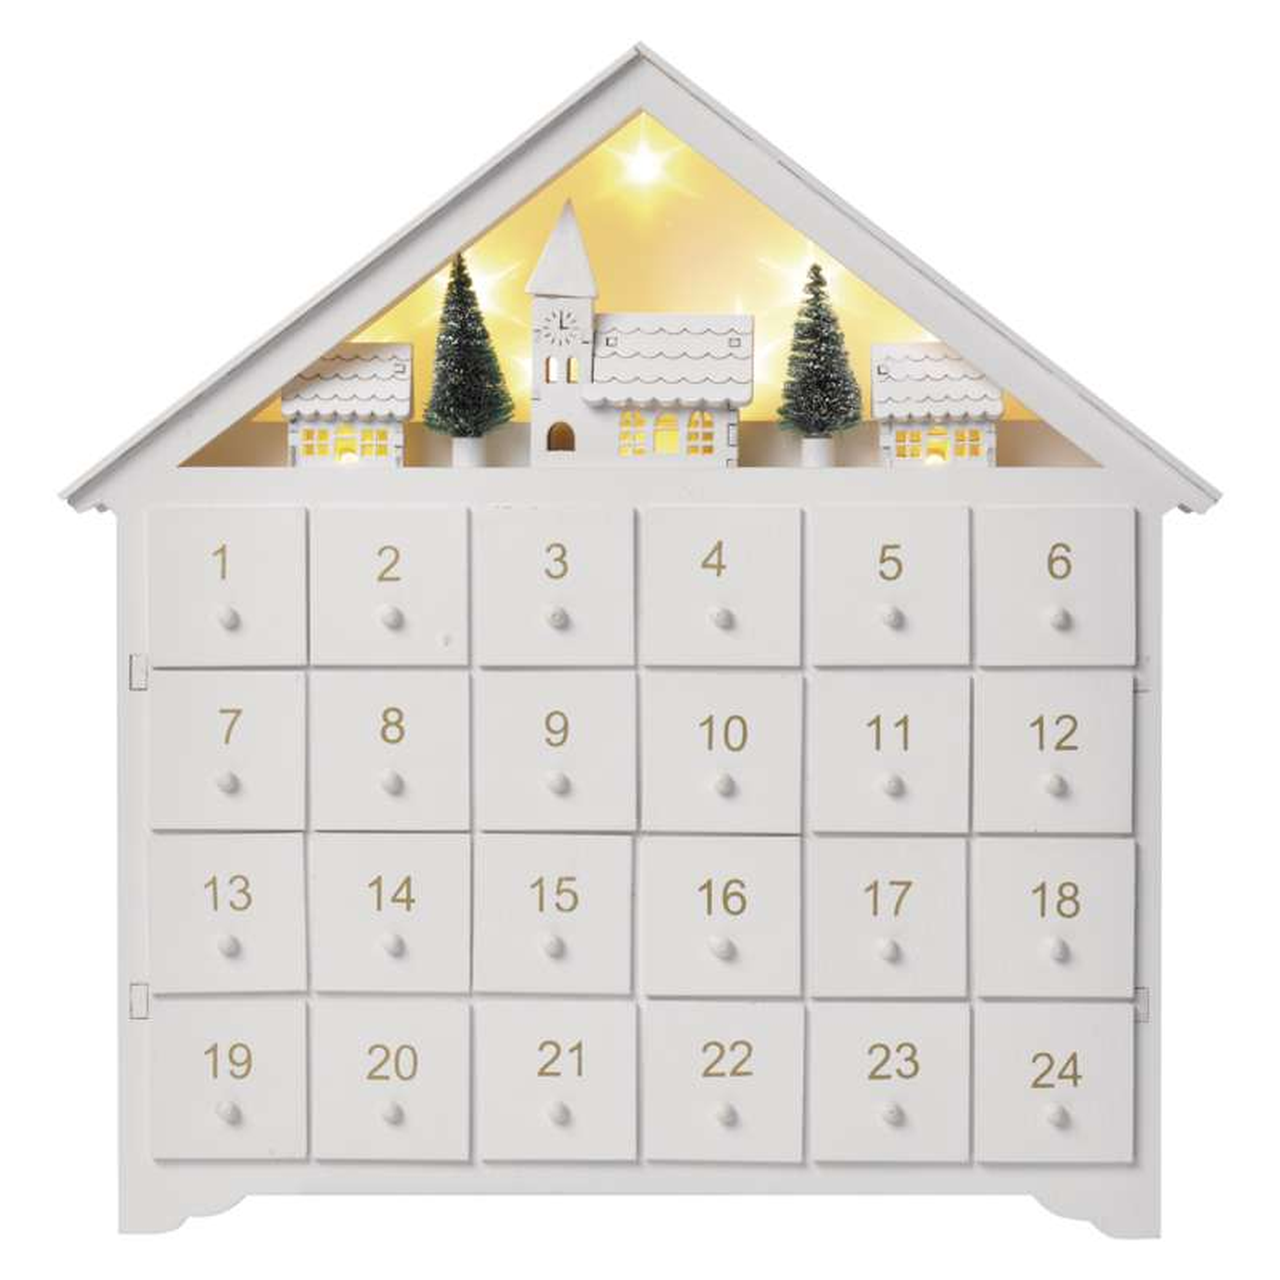 EMOS LED dřevěný adventní kalendář DCWW02